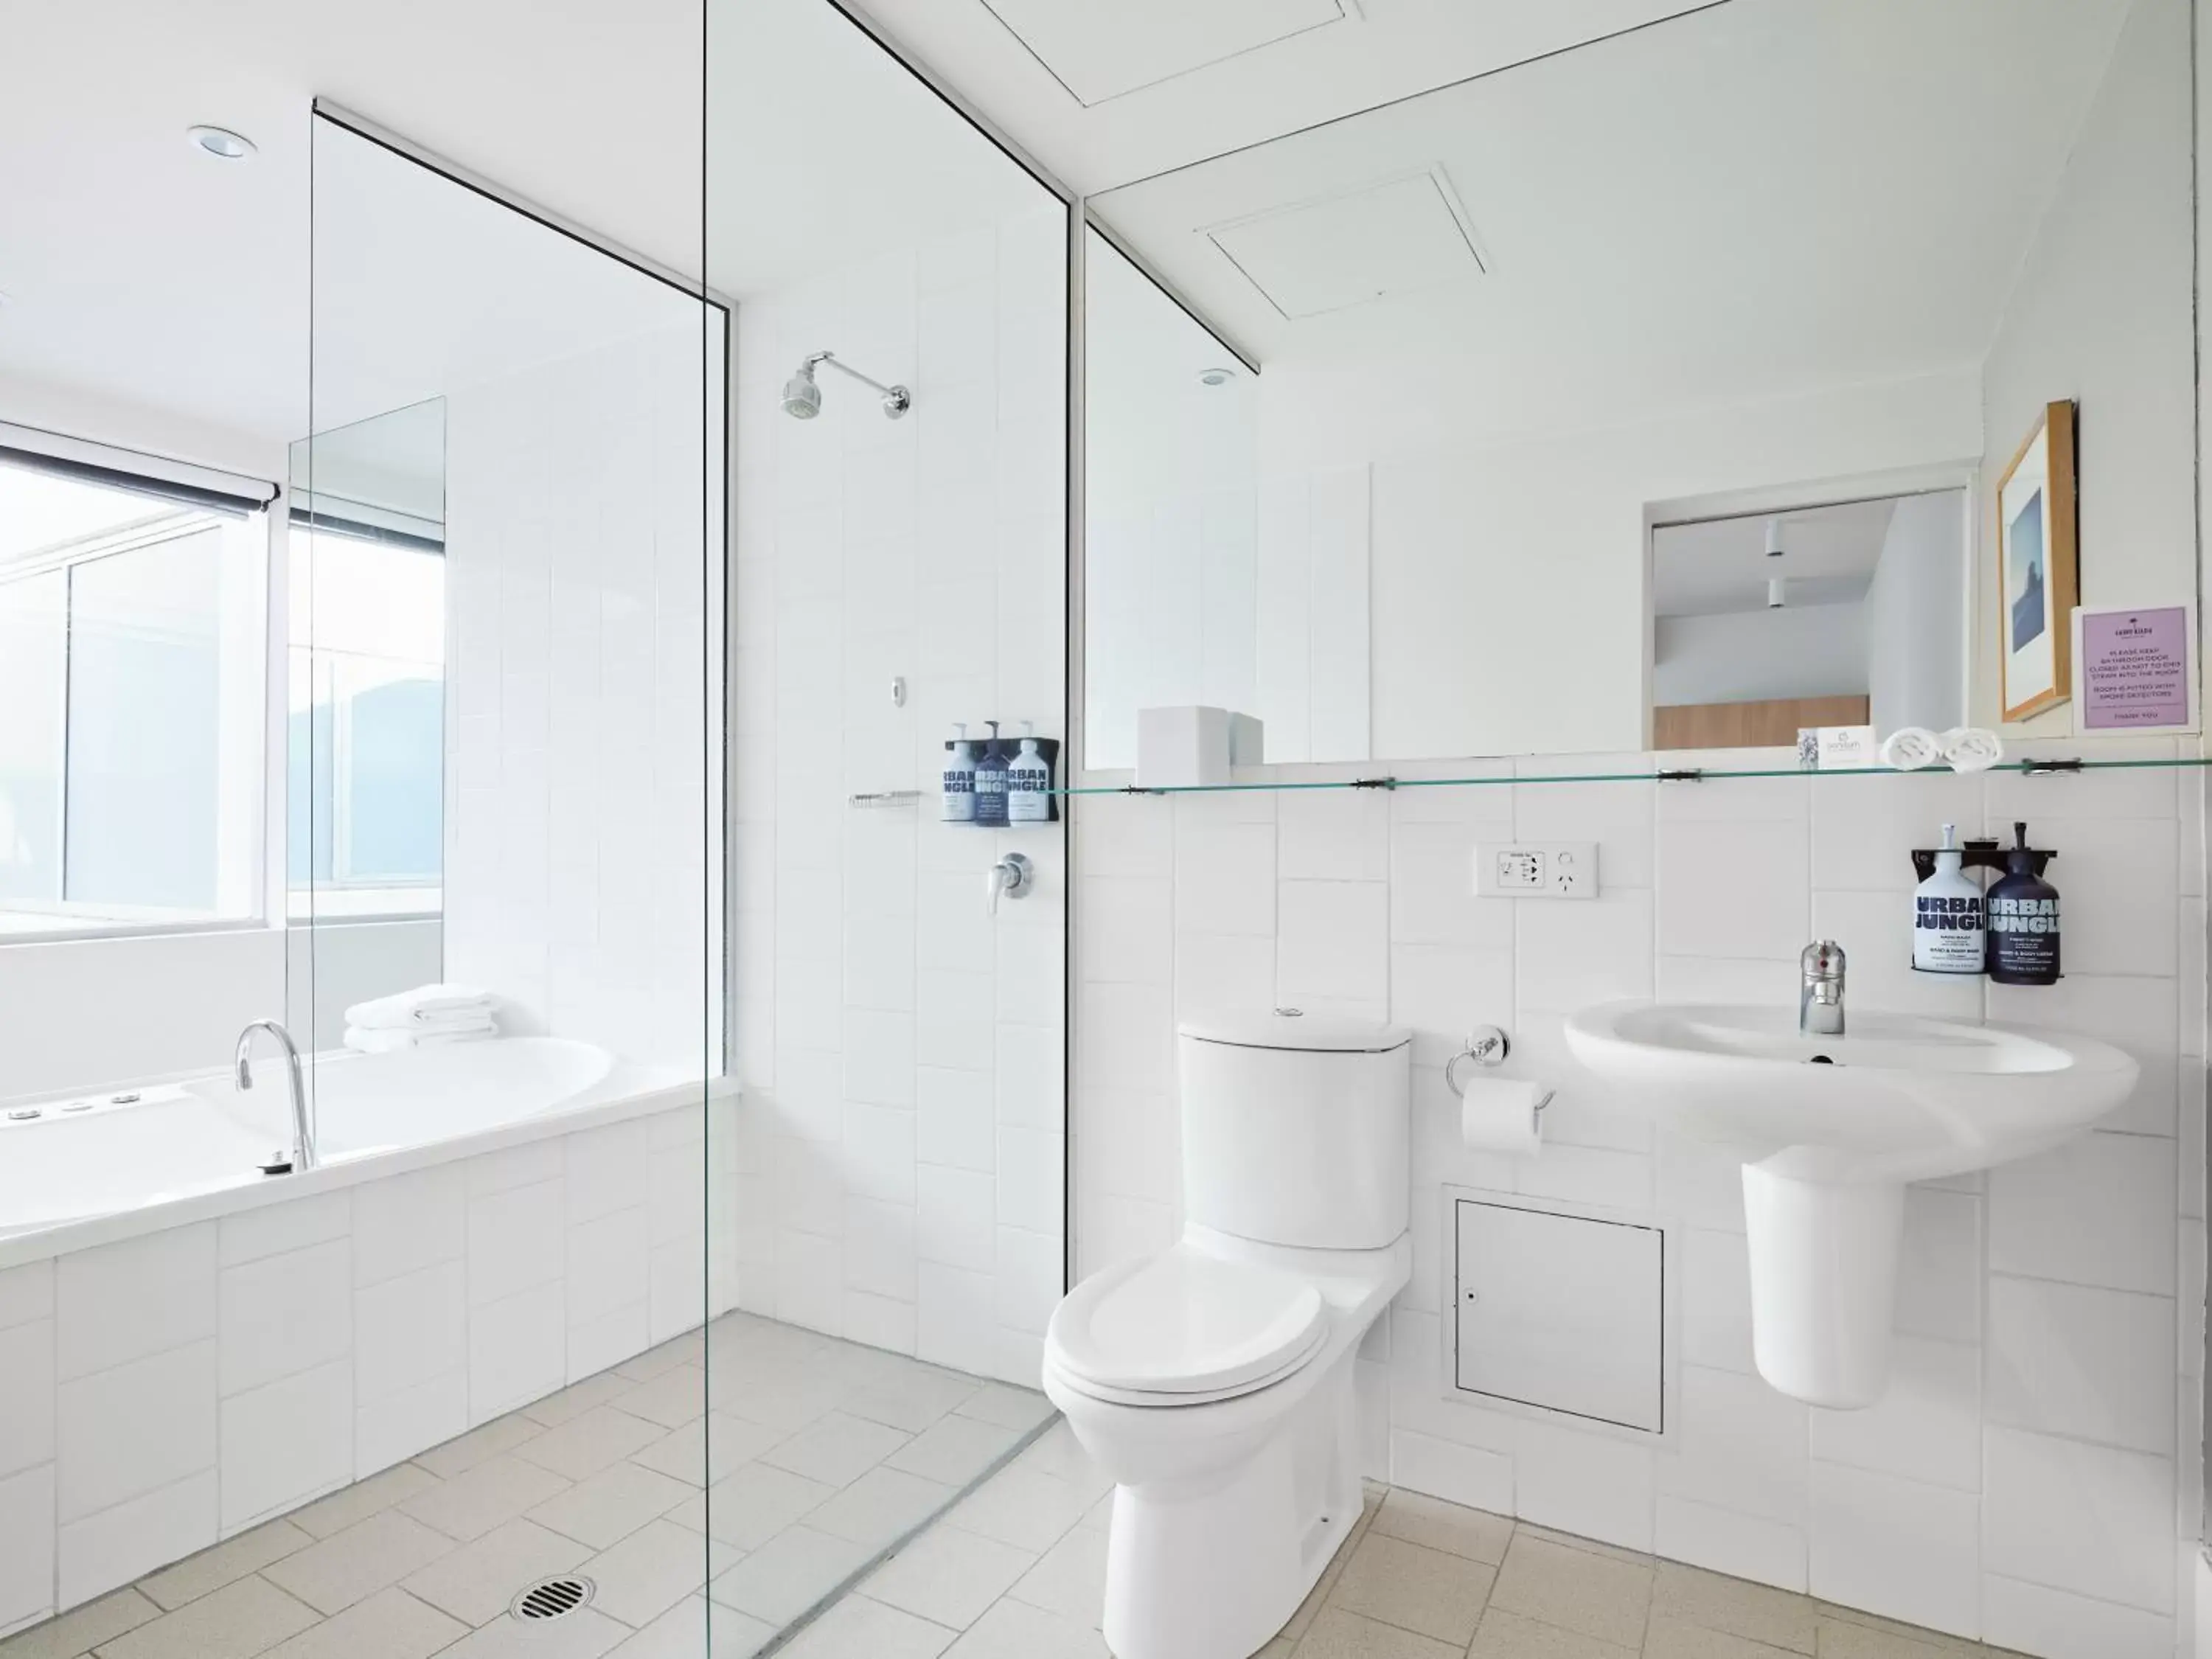 Bathroom in Saint Kilda Beach Hotel - formerly Rydges St Kilda